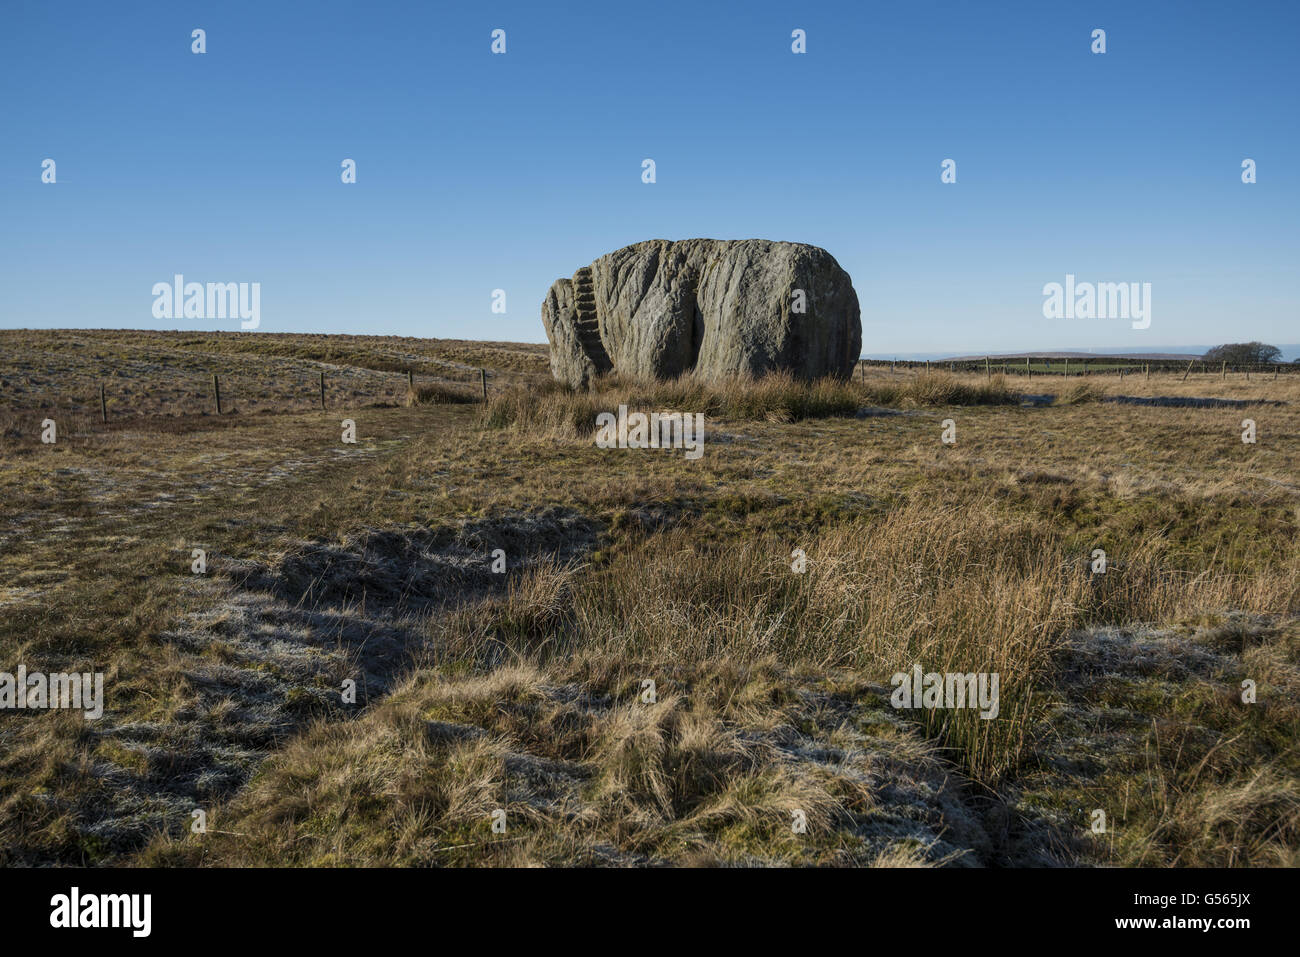 Dépôt glaciaire sur la lande, la grande pierre d'Fourstones (connue localement sous le nom de 'la grosse pierre'), près de Bentham, Tatham Fells, North Yorkshire, Angleterre, Février Banque D'Images